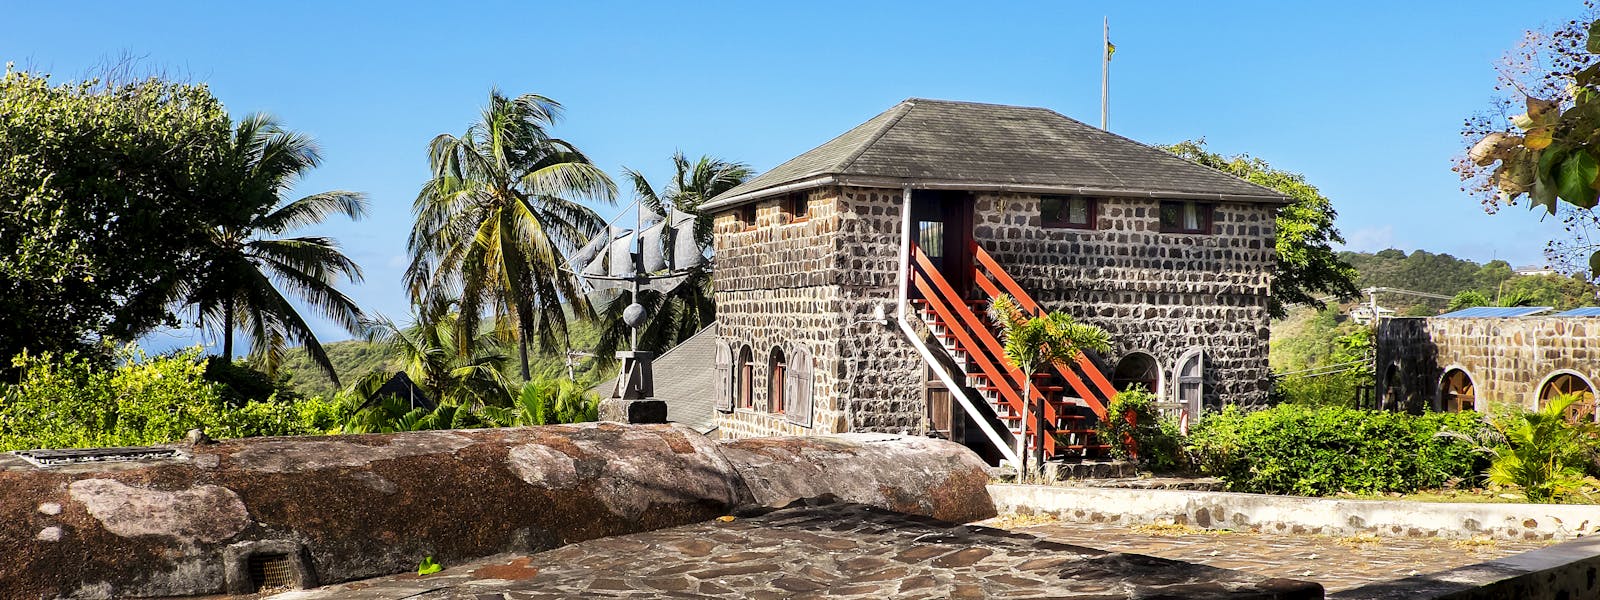 Special Villas in the Caribbean